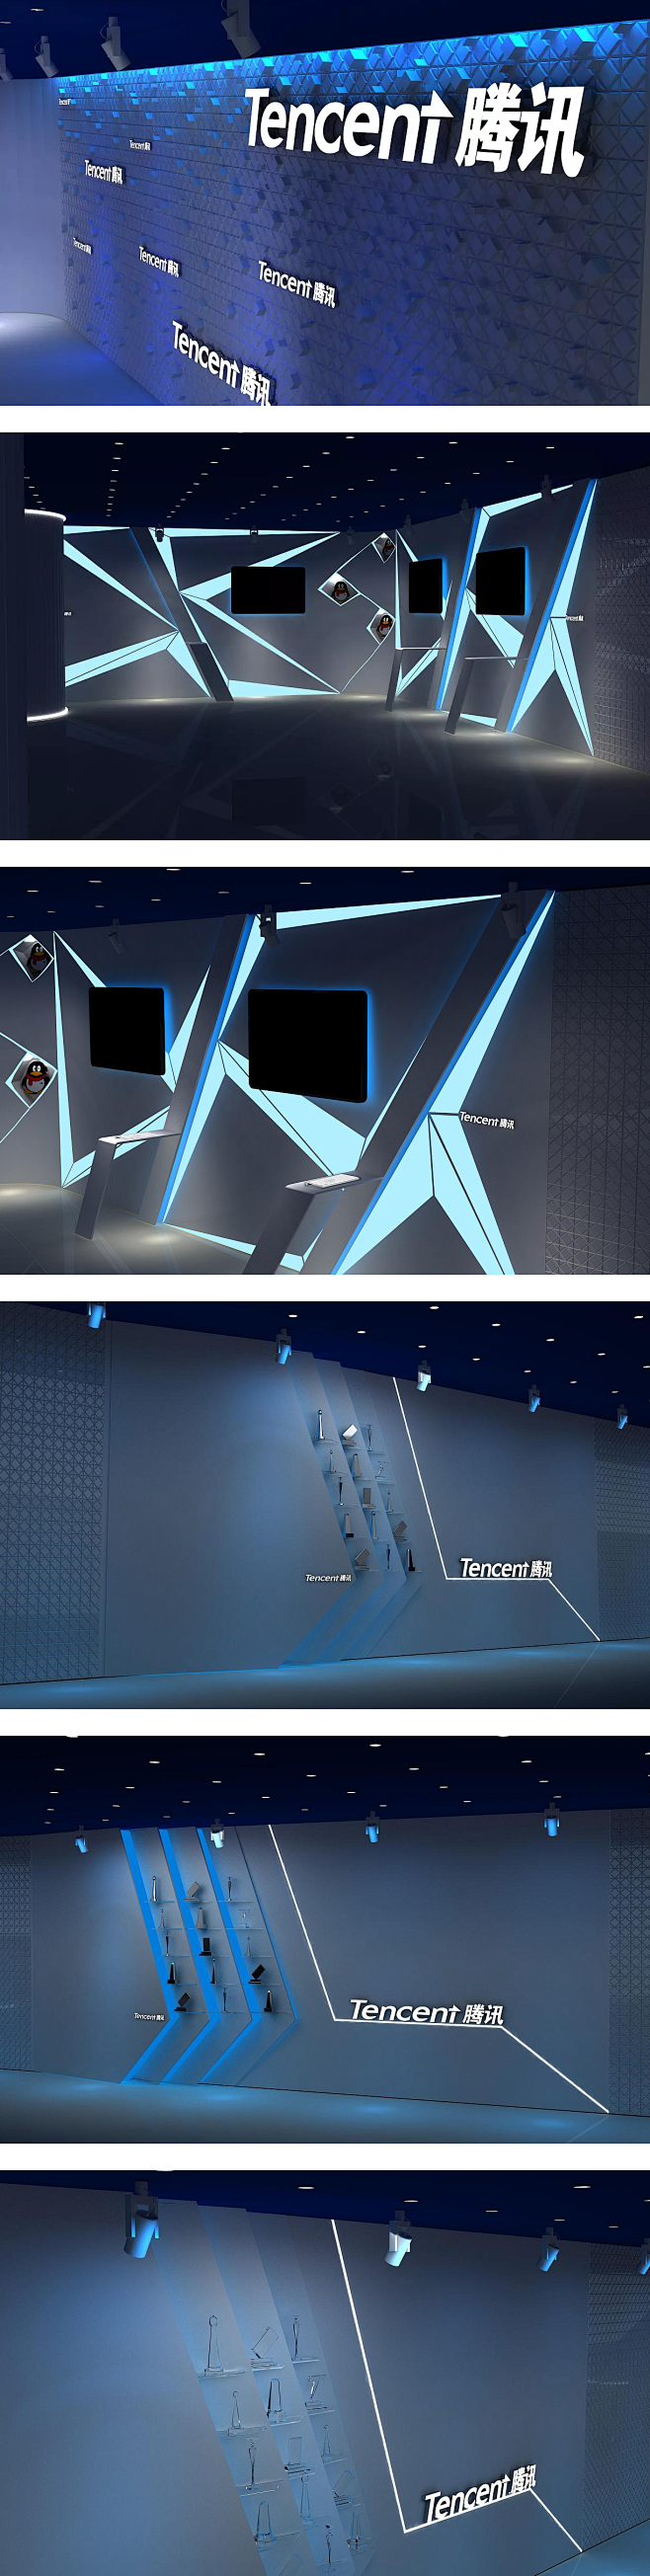 腾讯展厅设计 企业文化墙 展馆设计欣赏 ...